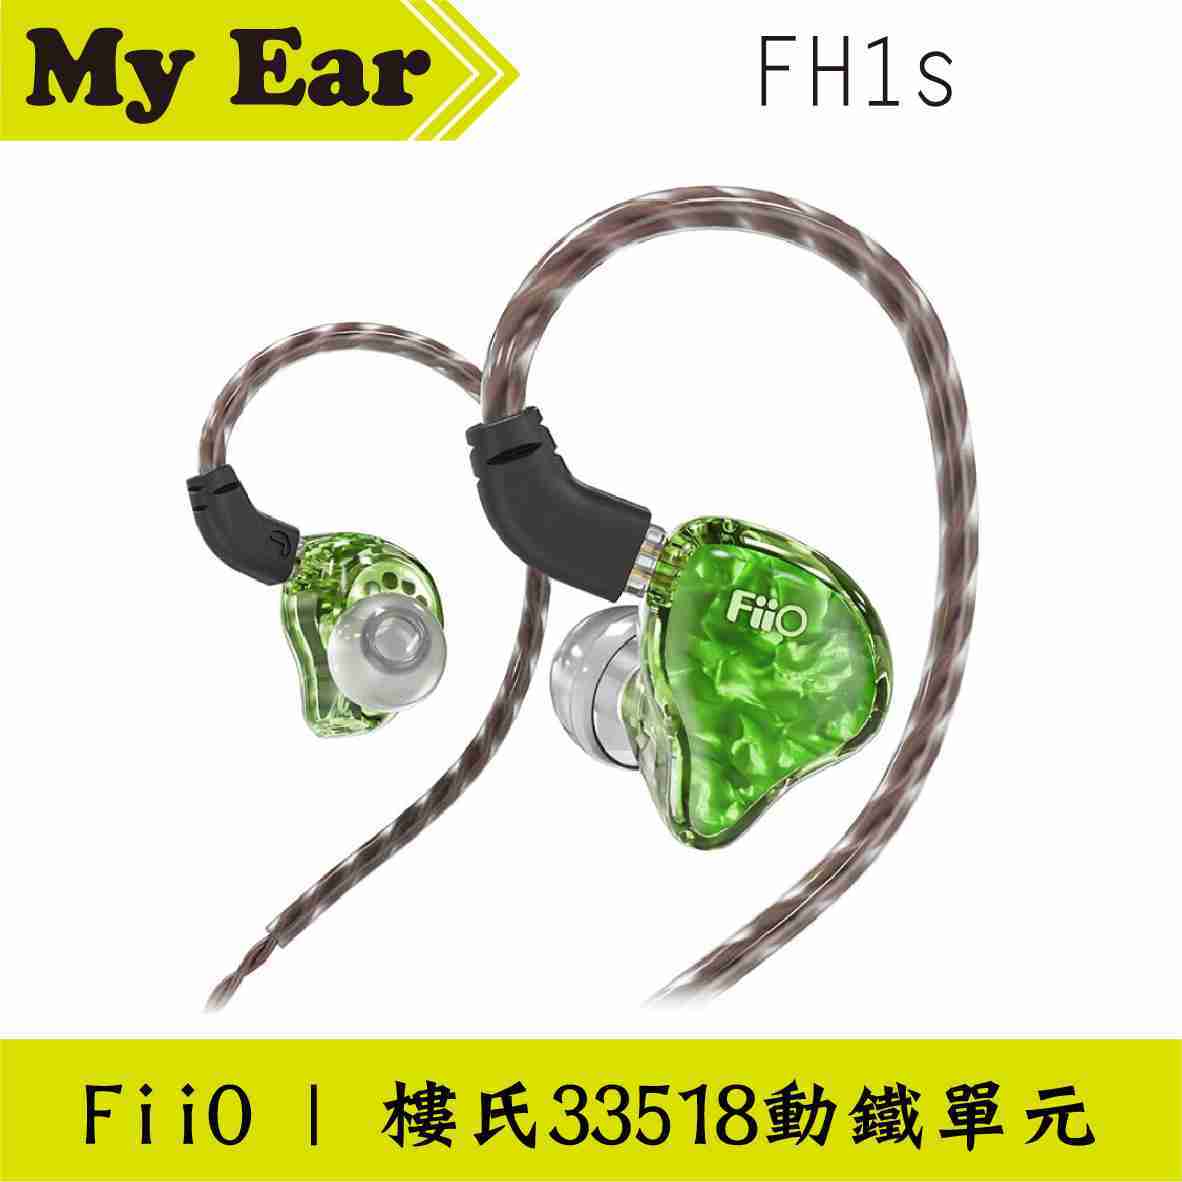 FiiO FH1s 入耳式 線控耳機 綠色 CIEM可換線 | My Ear耳機專門店